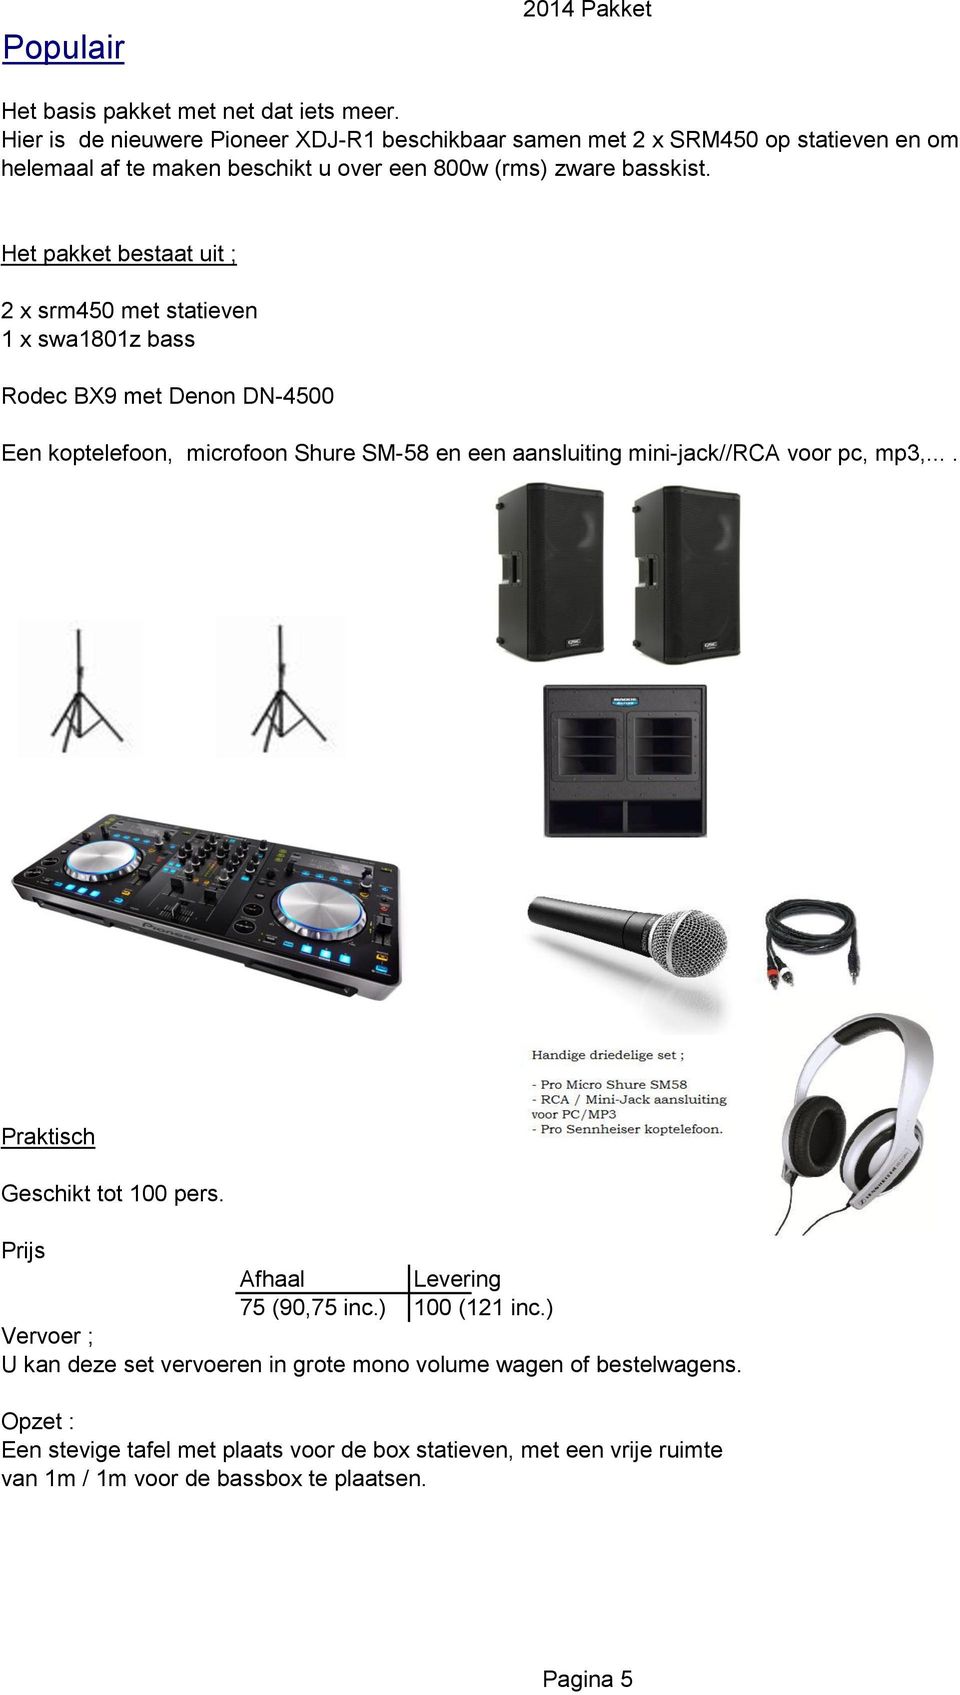 Het pakket bestaat uit ; 2 x srm450 met statieven 1 x swa1801z bass Rodec BX9 met Denon DN-4500 Een koptelefoon, microfoon Shure SM-58 en een aansluiting mini-jack//rca voor